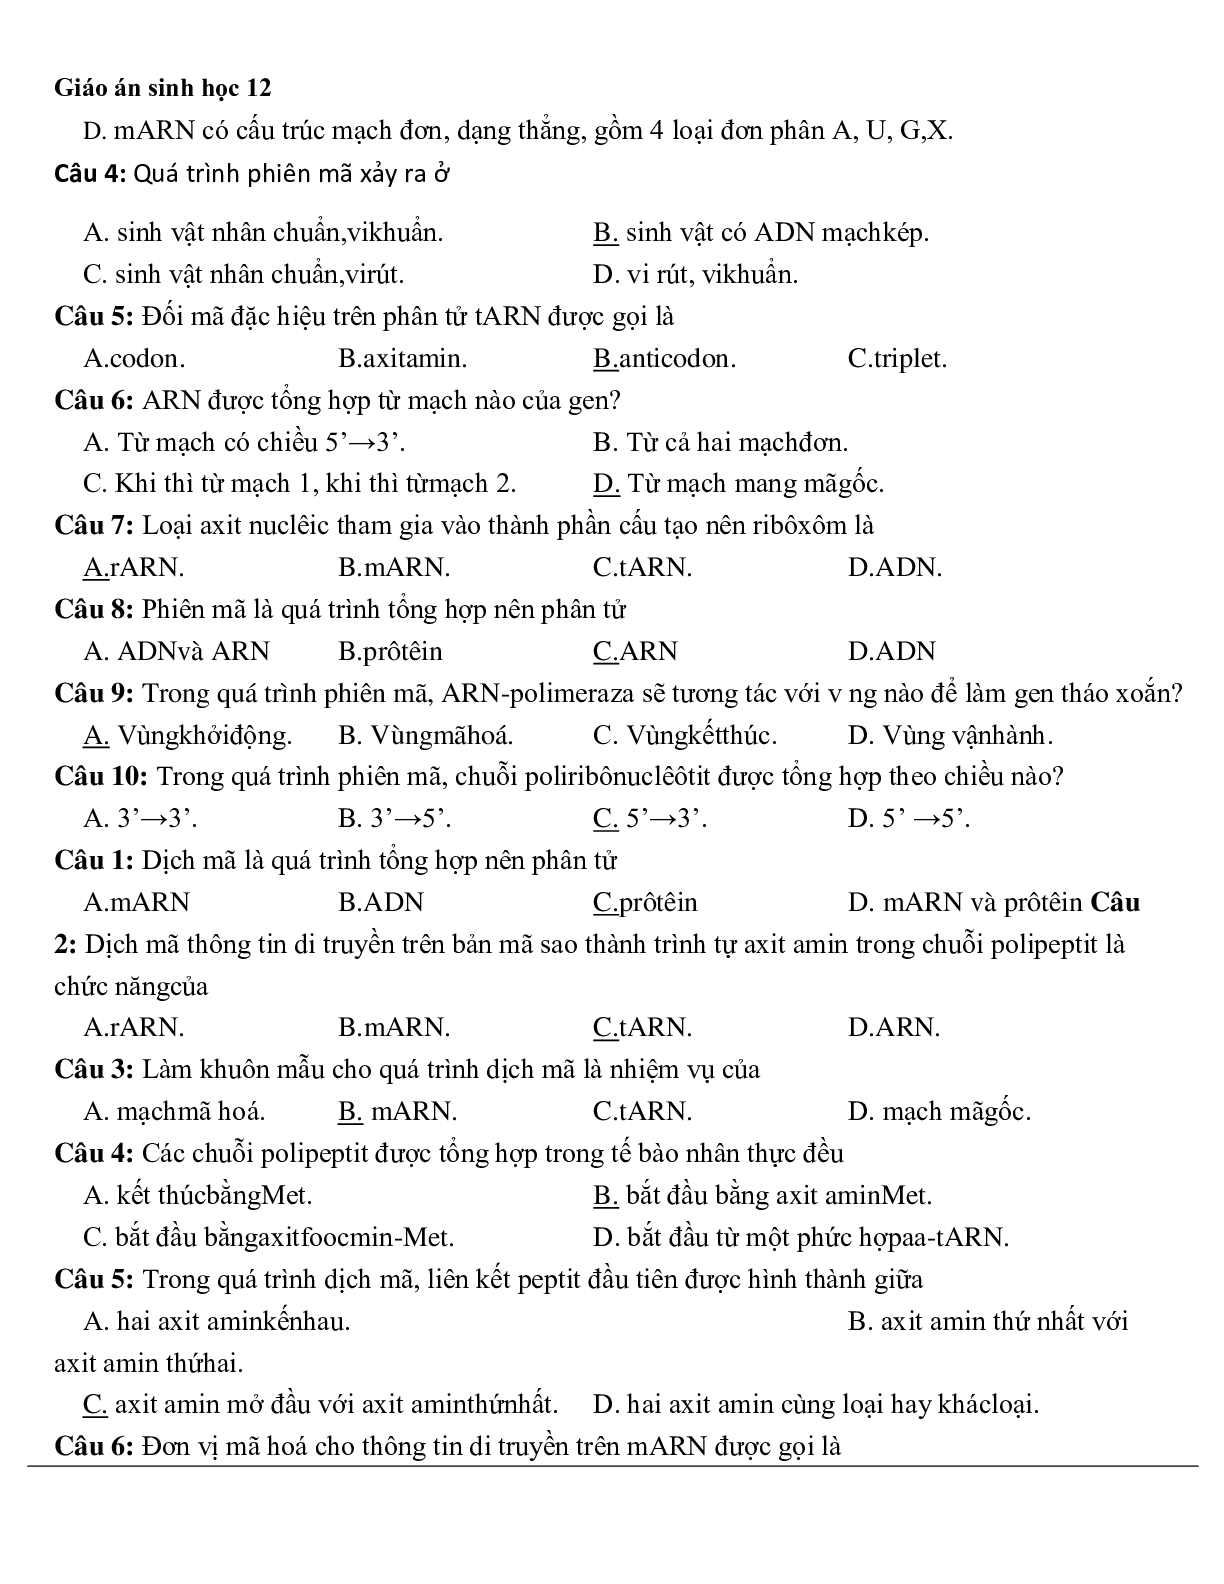 Giáo án Sinh học 12 Bài 2: Phiên mã và dịch mã mới nhất (trang 10)